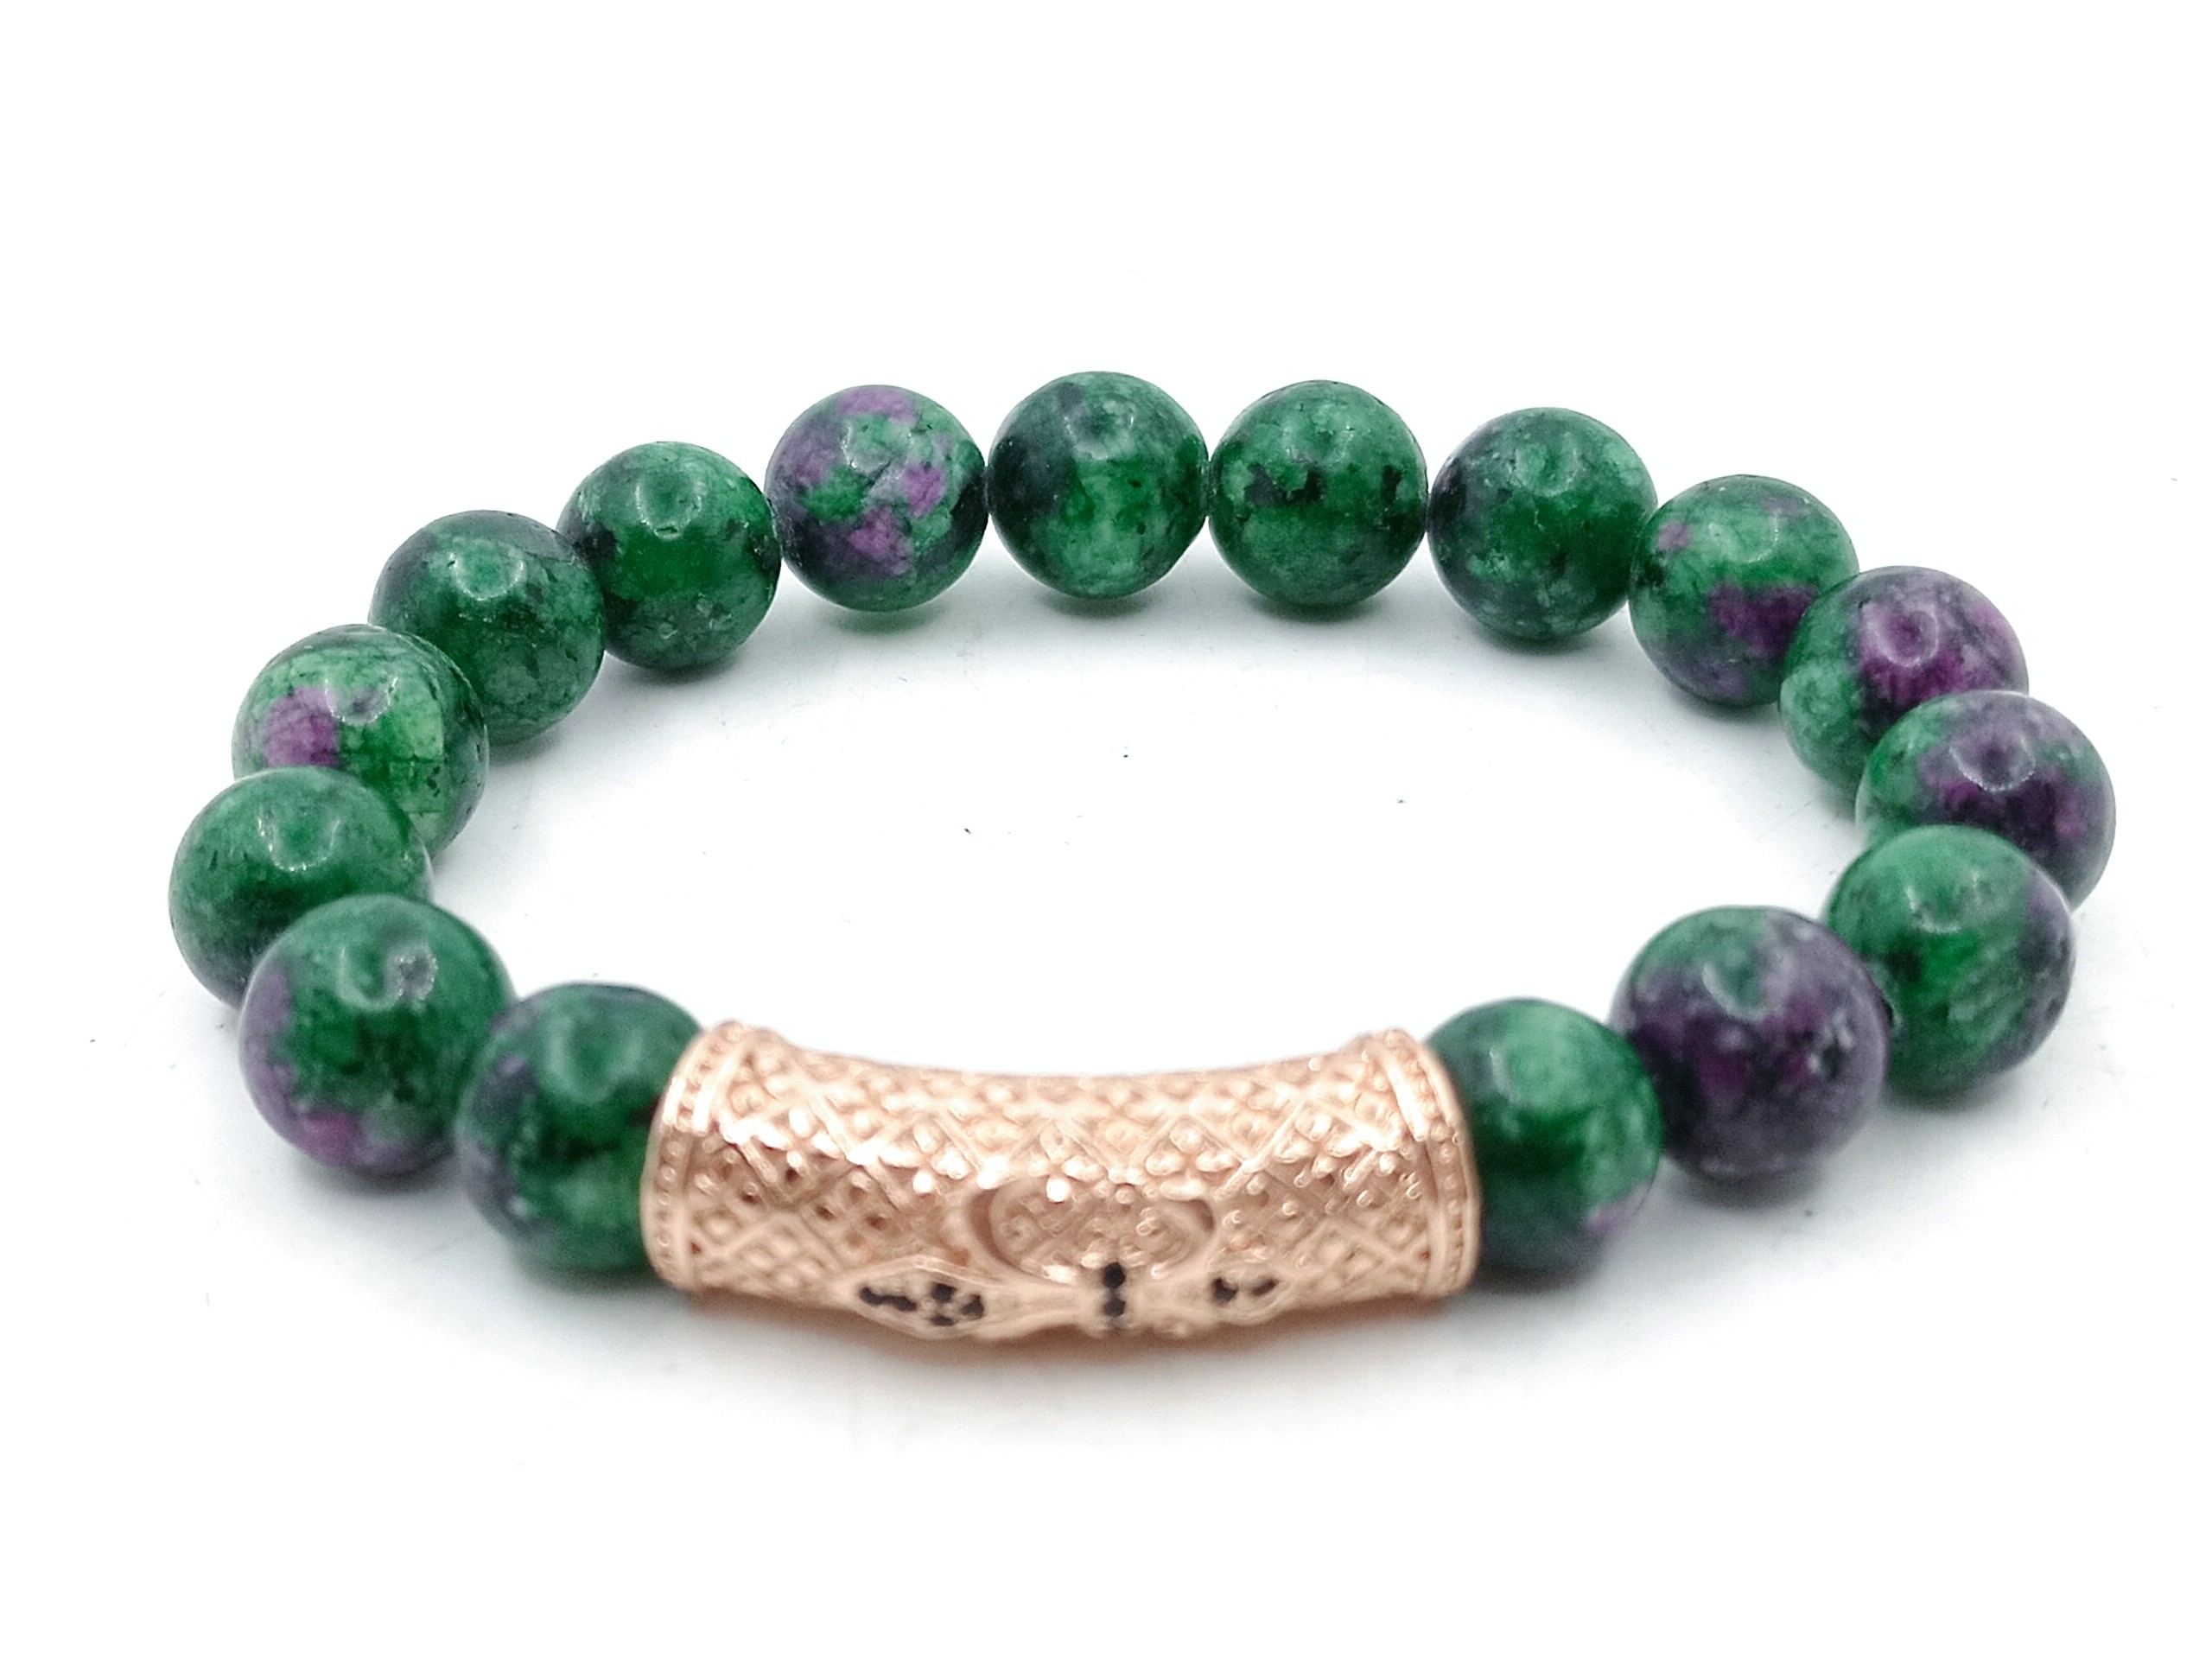 Bracelet of zeosite stone